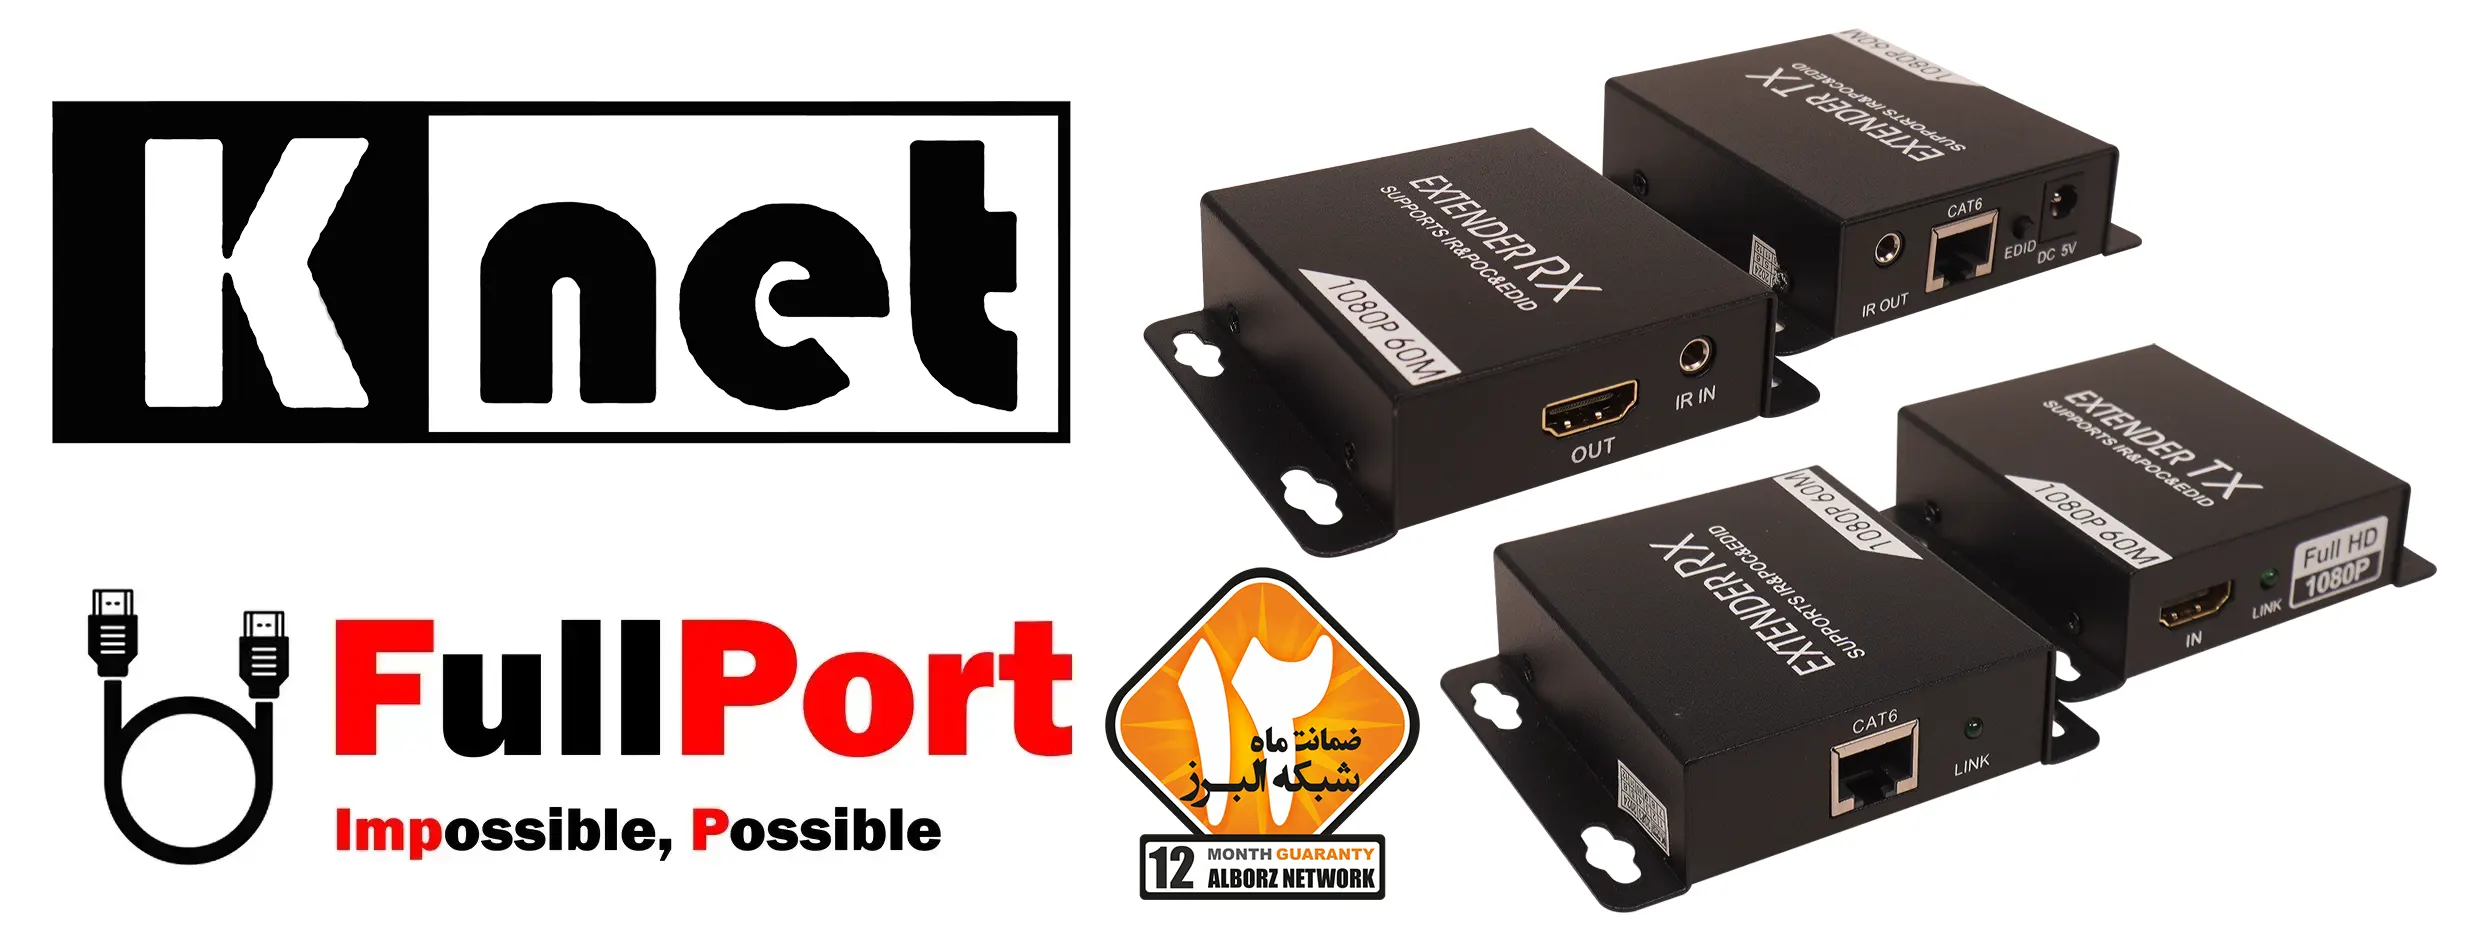 خرید اینترنتی توسعه دهنده HDMI روی کابل شبکه 60 متر کی نت | K-NET مدل K-EXHD0060 از فروشگاه اینترنتی فول پورت